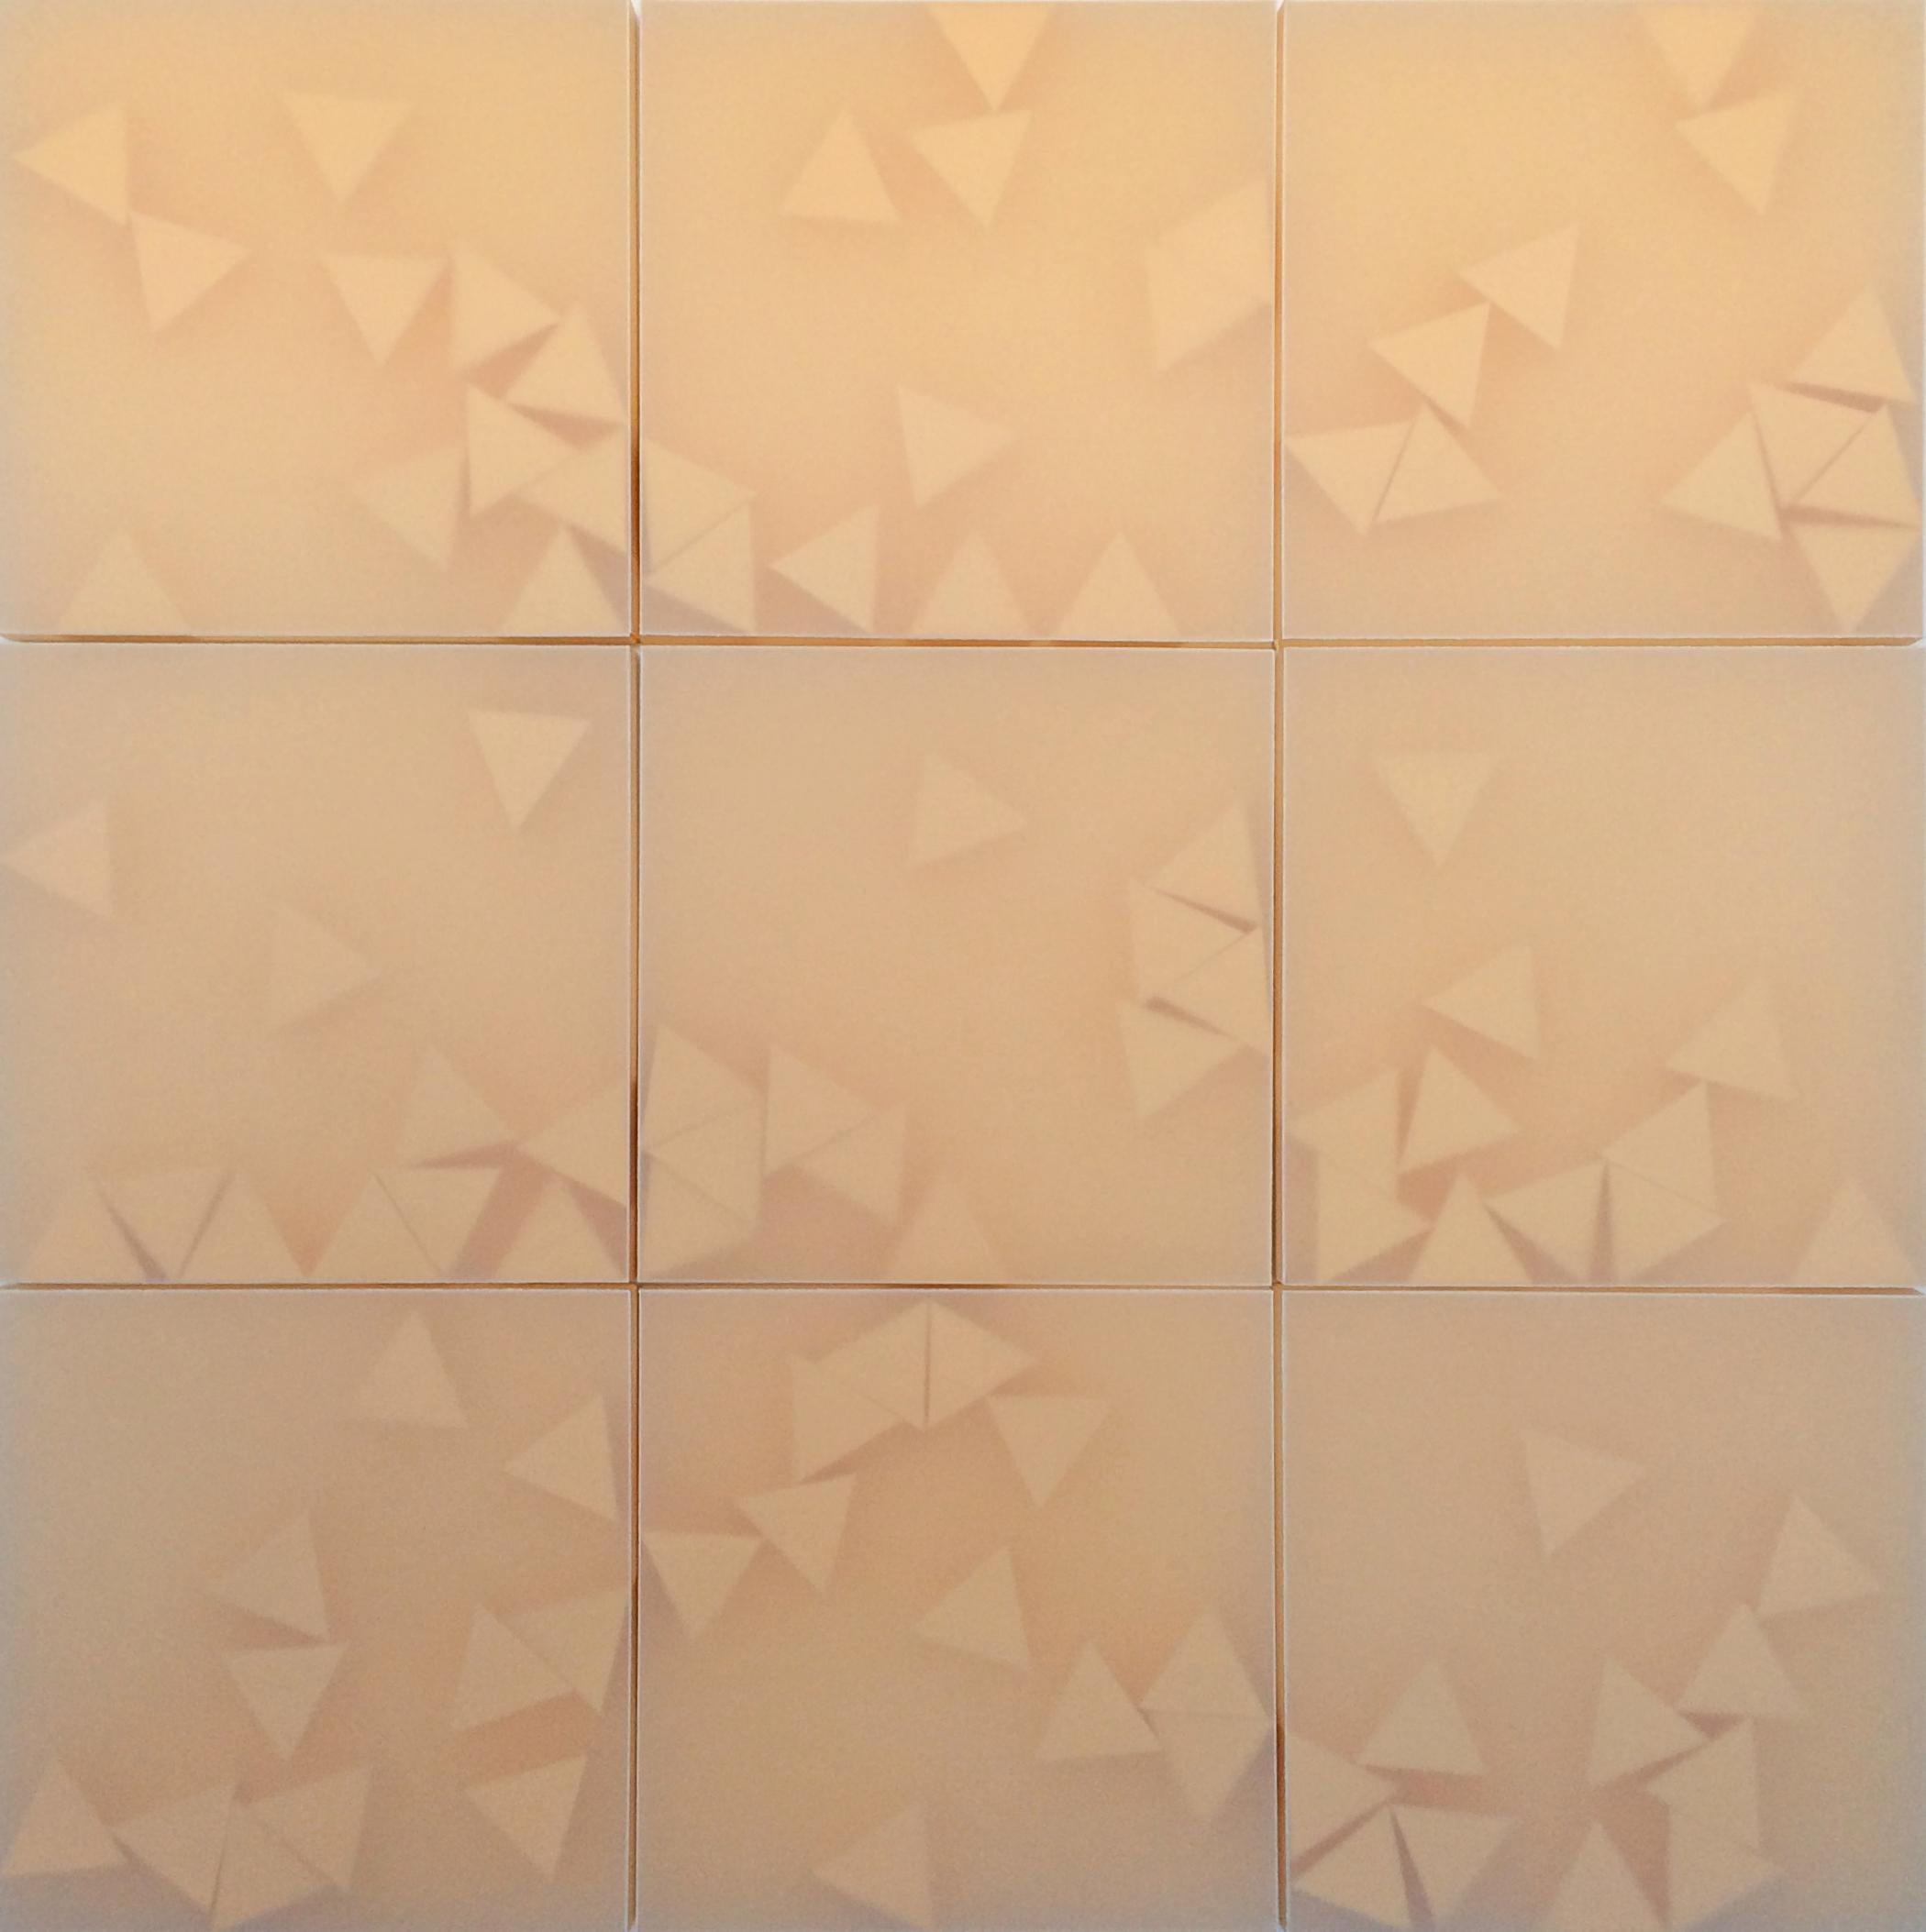 Norma Mquez Orozco, The Sun, 2016, papier translucide, 30 x 30, minimaliste